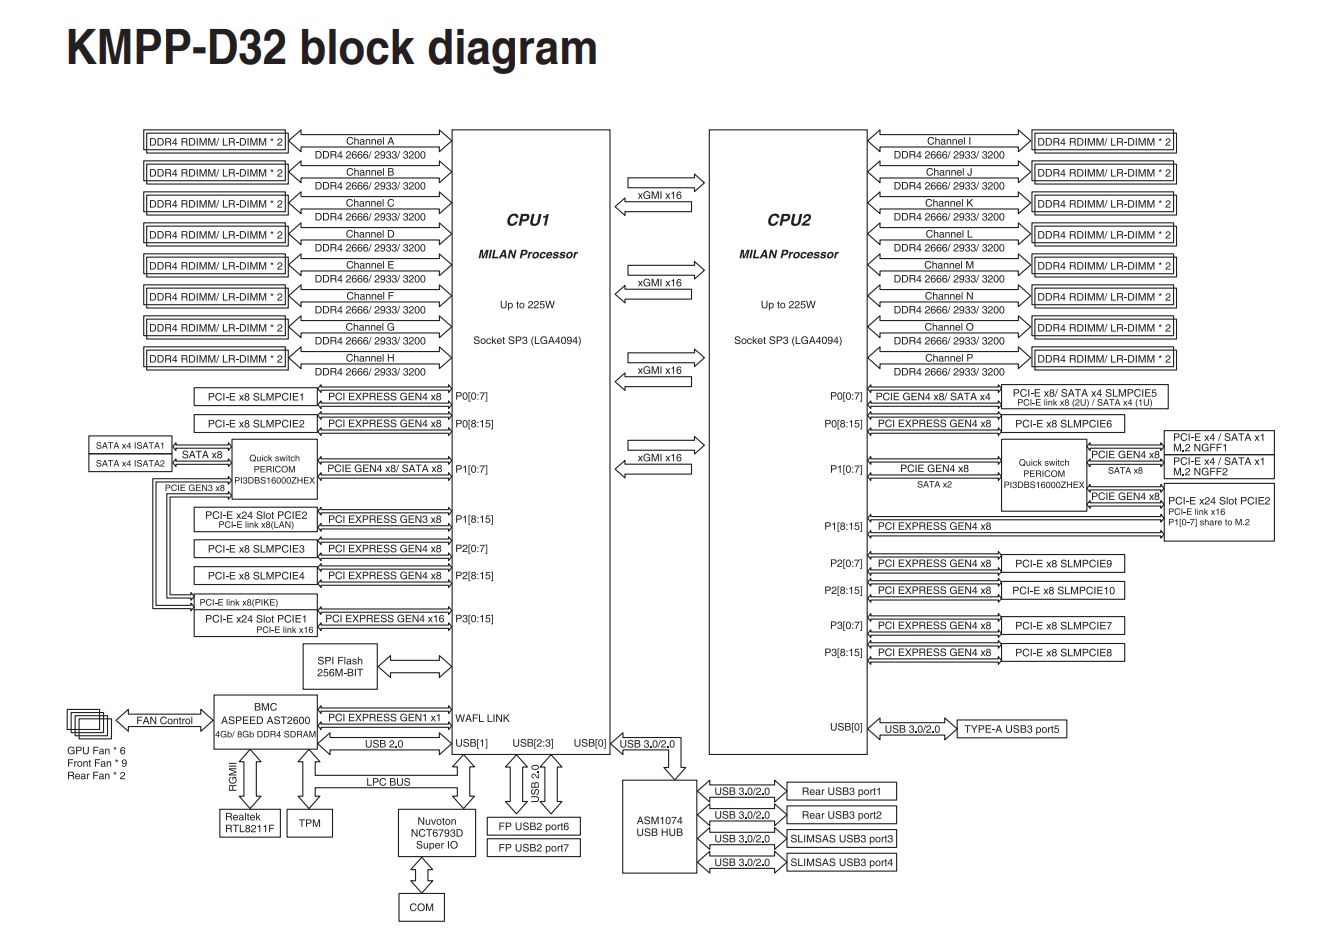 ASUS KMPP D32 Block Diagram